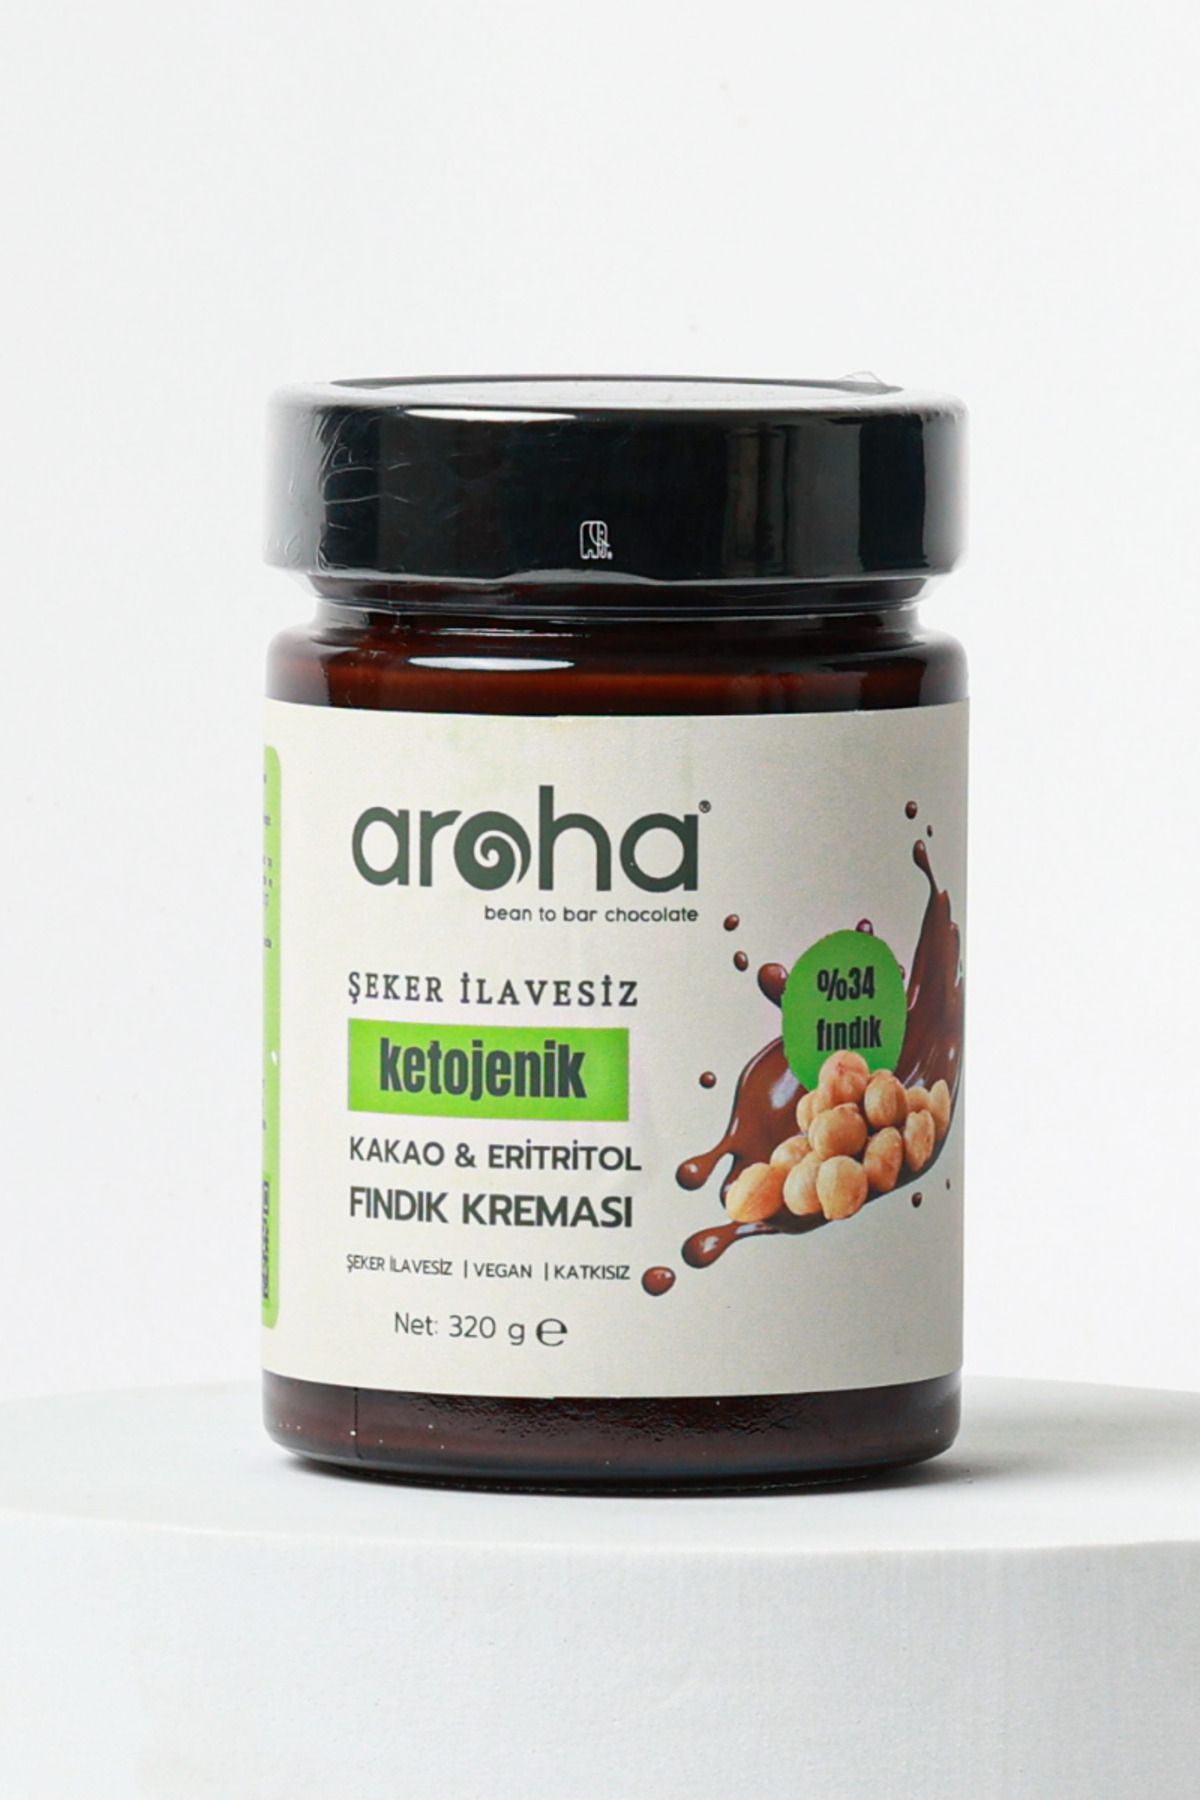 AROHA Şekersiz Kakaolu & Eritritollü Ketojenik Fındık Kreması - 320 Gr